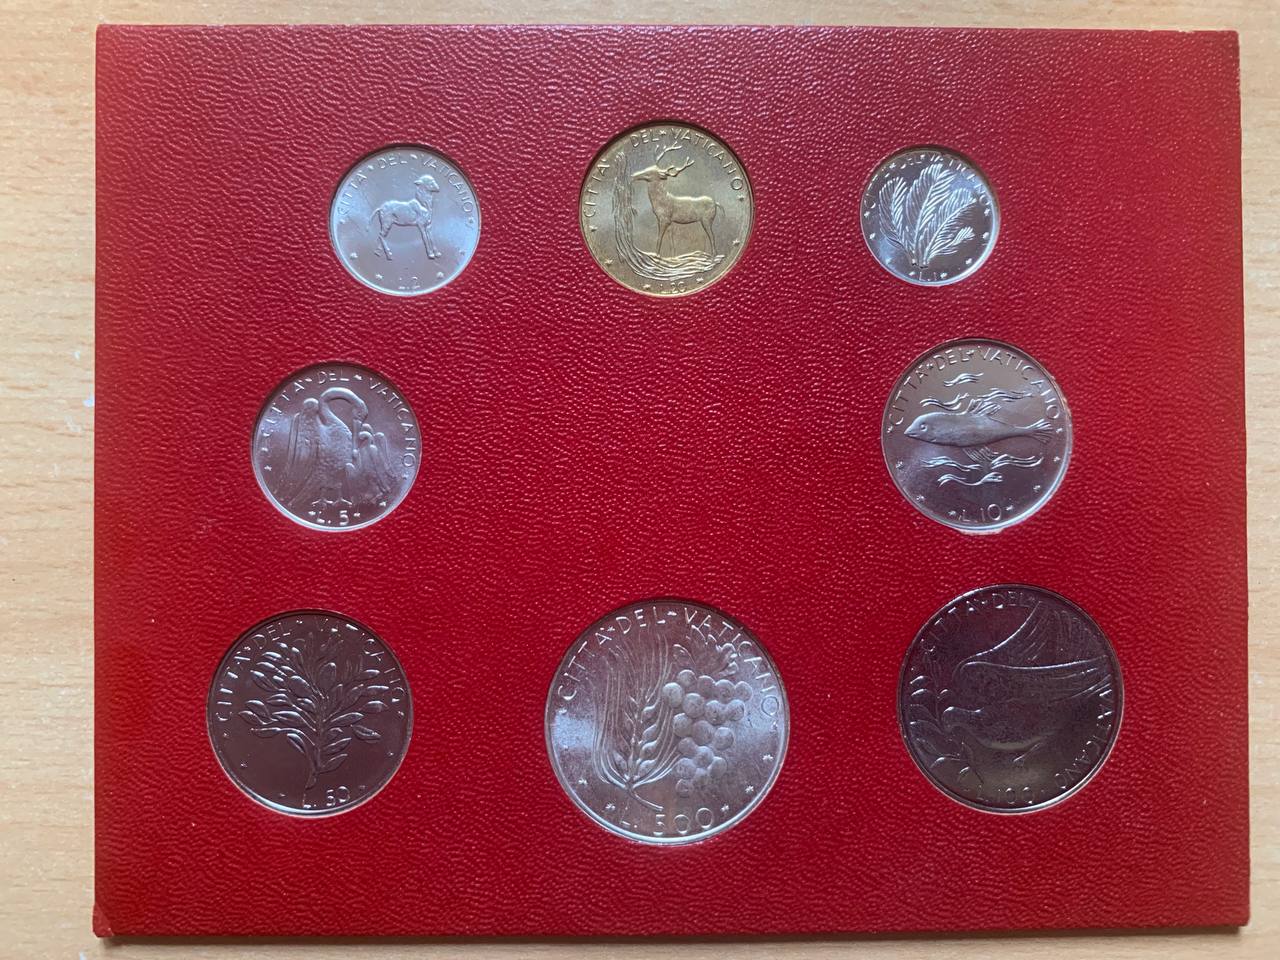  Jahresset von Vatikan 1972 BU (8 Münzen)   